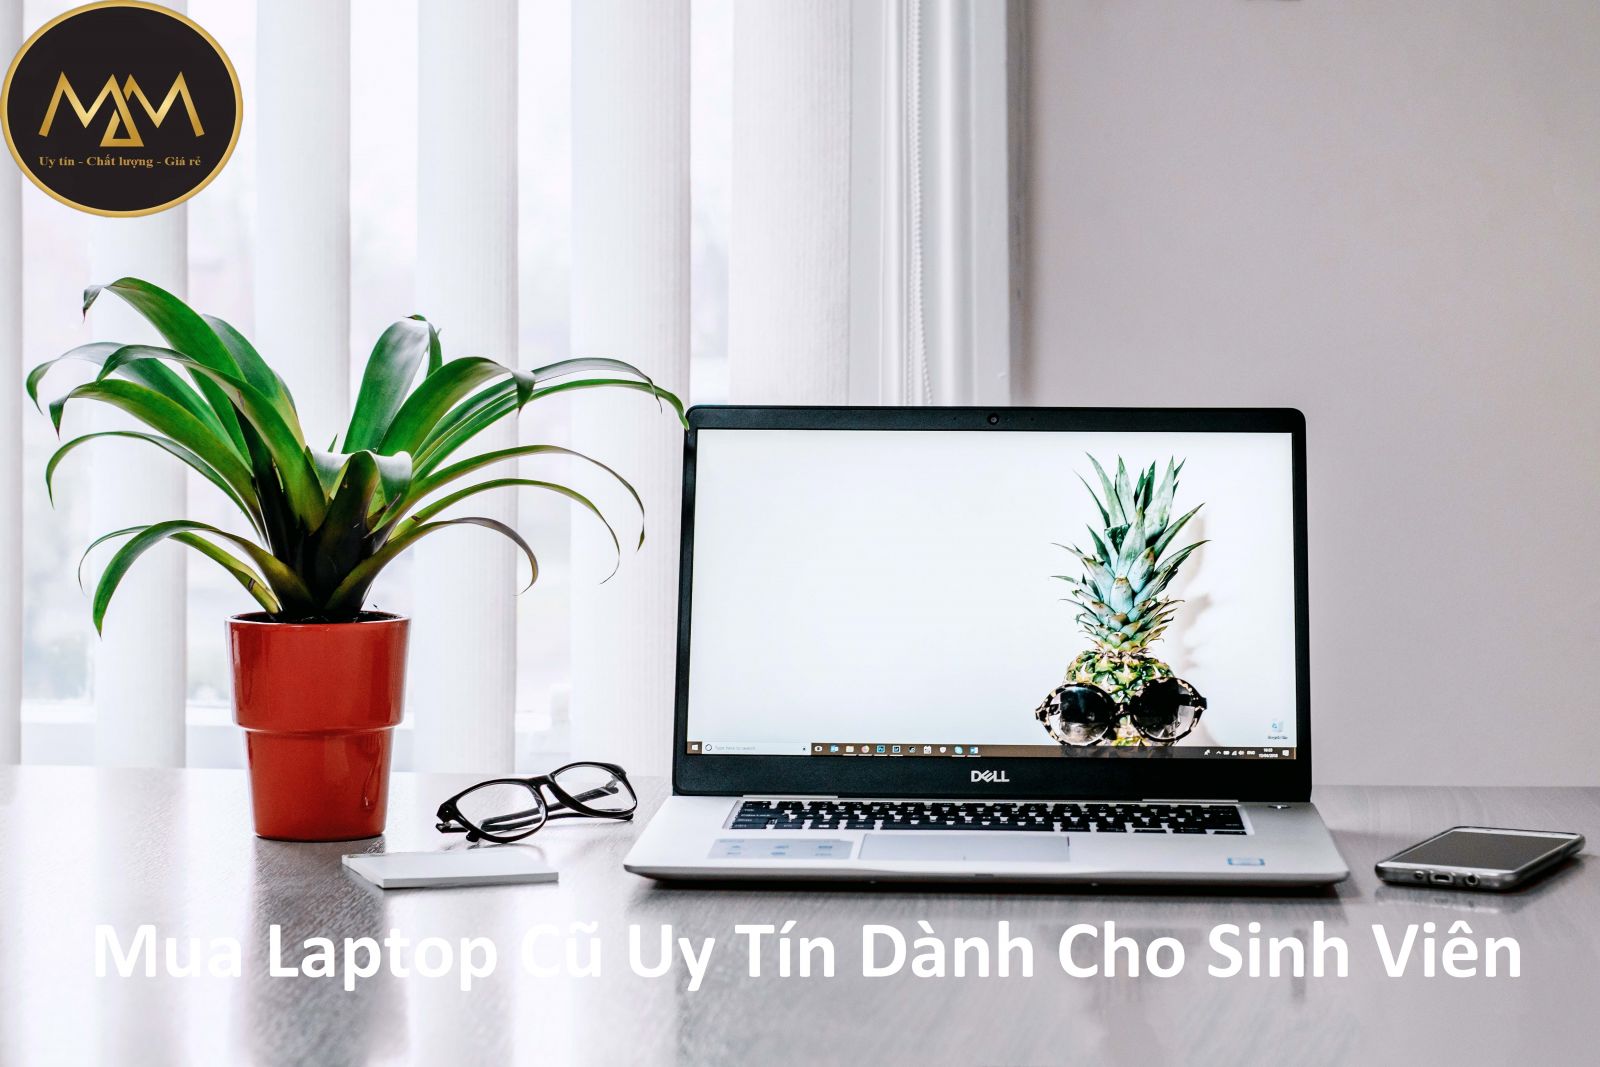 Mua Laptop Cũ Uy Tín Dành Cho Sinh Viên